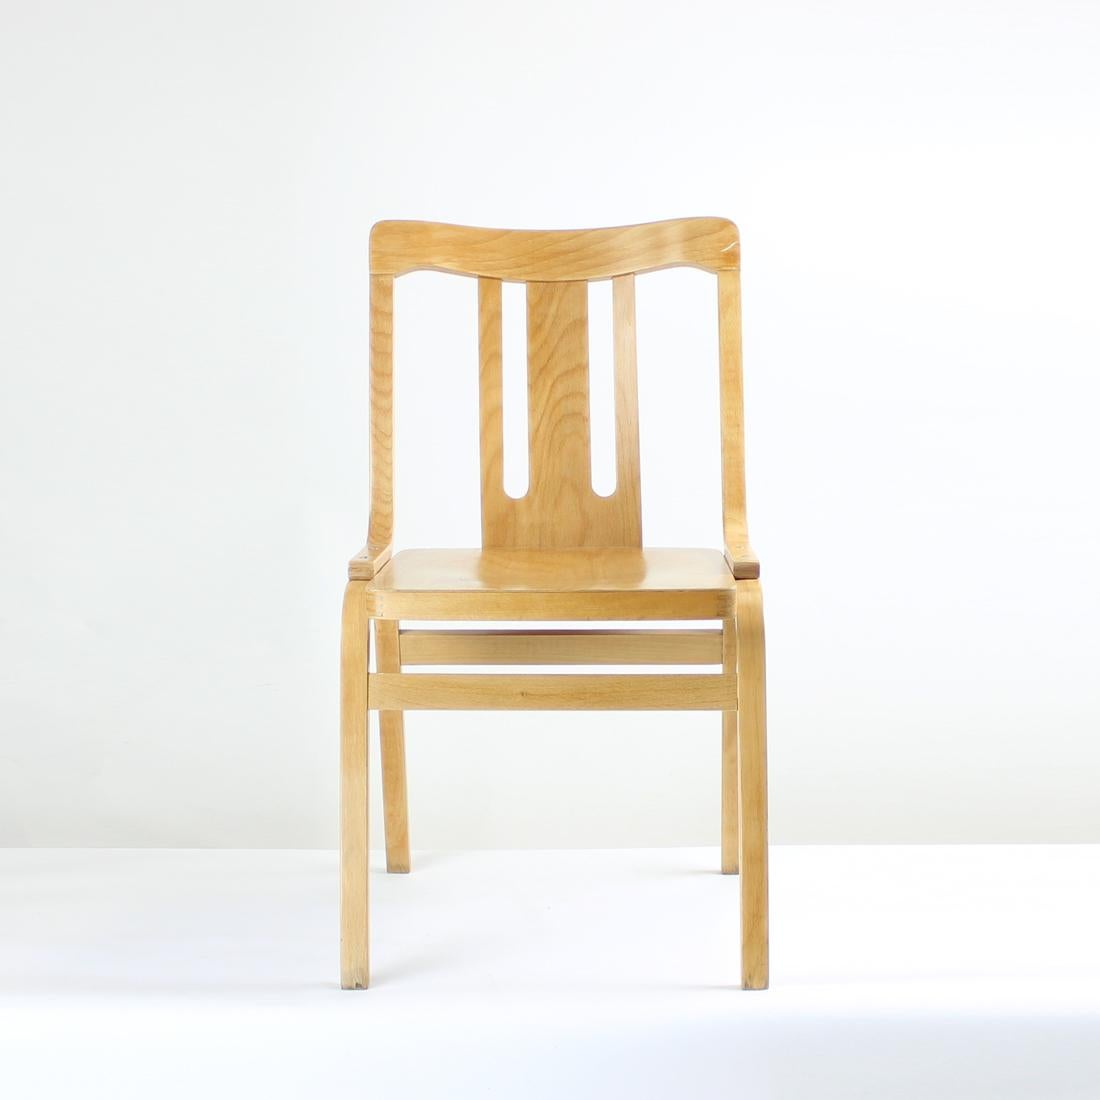 Belle chaise de salle à manger produite par la société TON dans les années 1960. L'étiquette d'origine est encore attachée. La chaise est un mélange de bois de chêne courbé et de contreplaqué. Excellent travail du bois et caractéristiques de